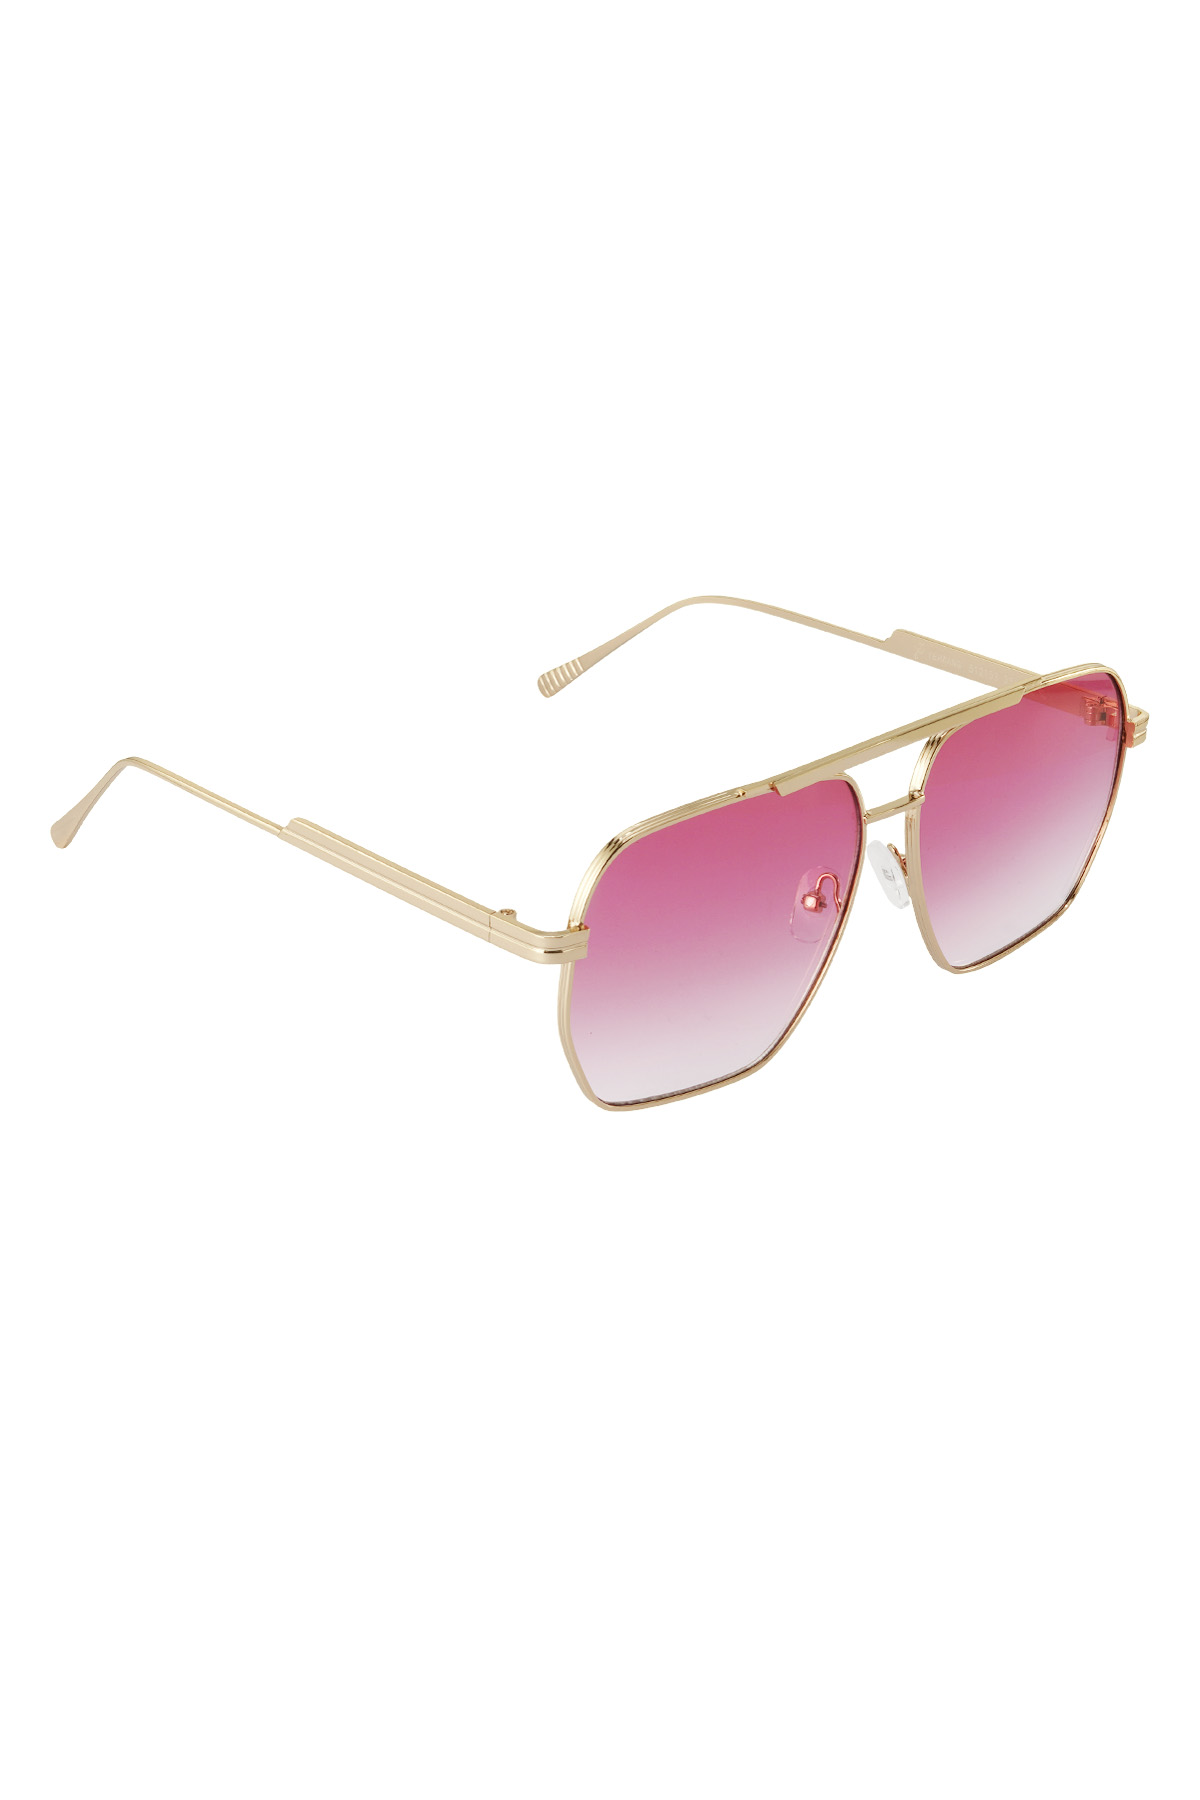 Metal yazlık güneş gözlüğü - Pembe ve altın rengi h5 